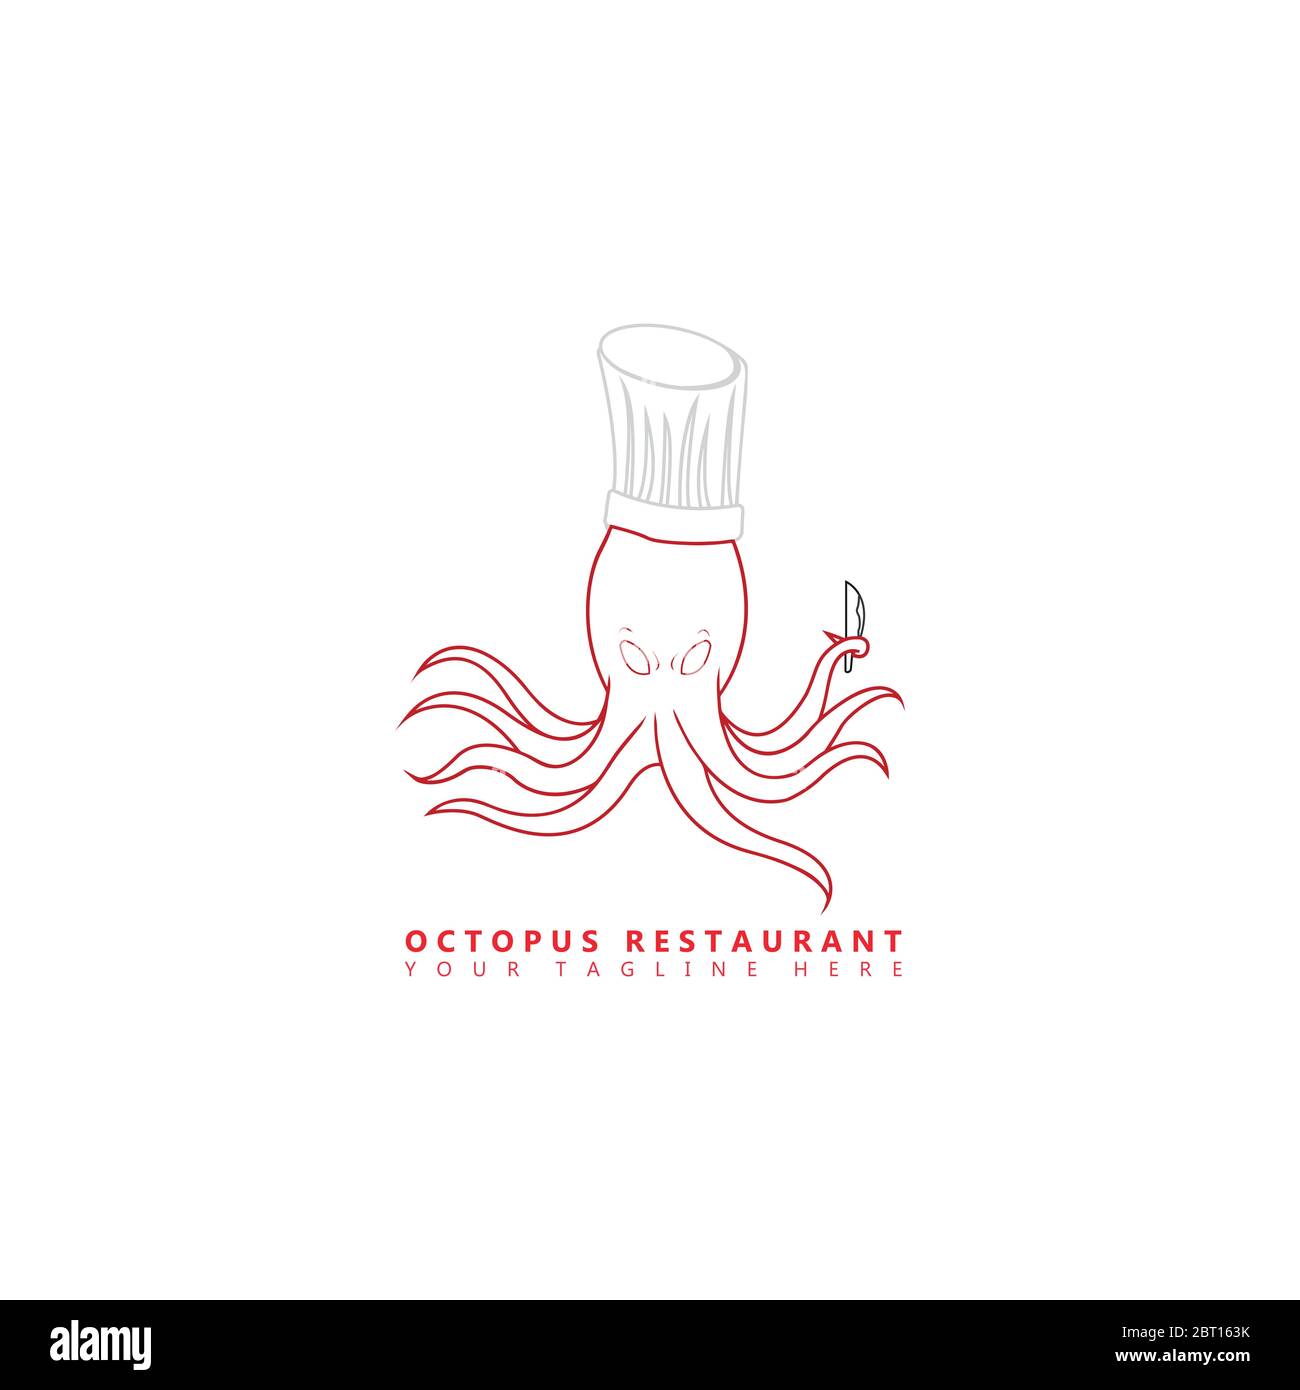 C'est une image d'un logo de mascotte de poulpe qui porte un chapeau de chef et tient un couteau de cuisine dans ses tentacules. Ce logo est adapté à une utilisation dans les toilettes Illustration de Vecteur